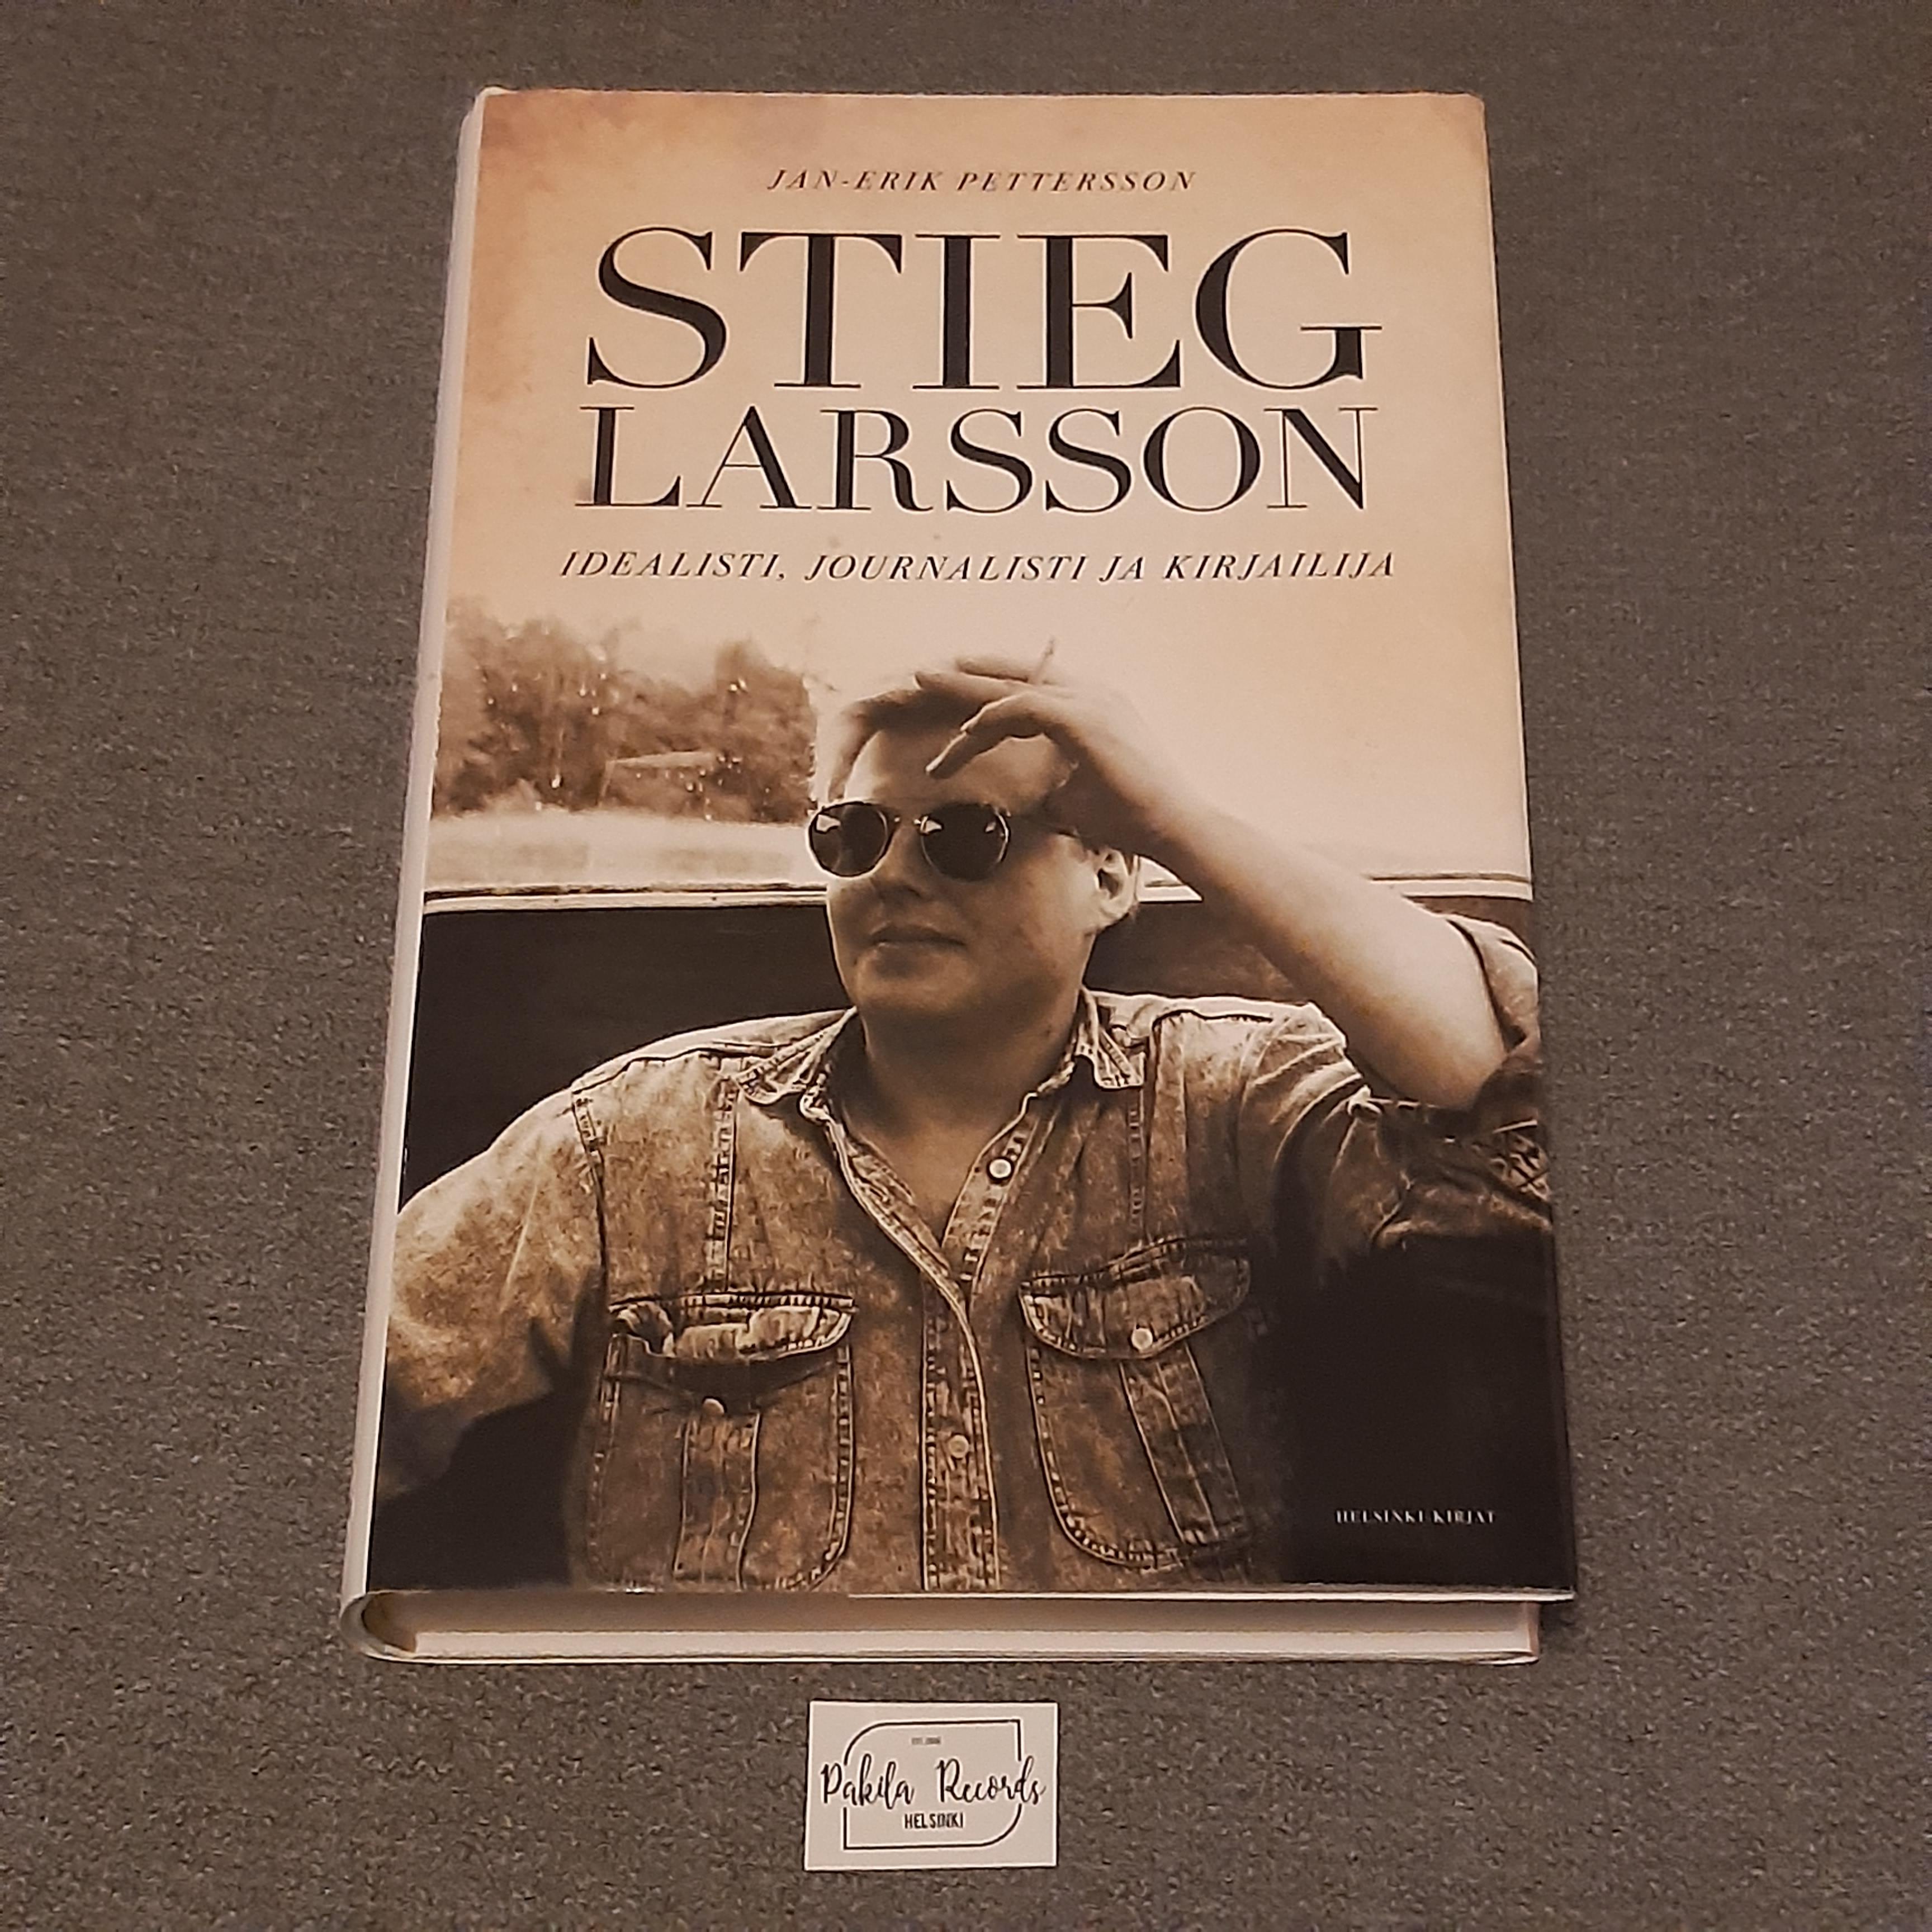 Stieg Larsson, Idealisti, journalisti ja kirjailija - Jan-Erik Pettersson - Kirja (käytetty)